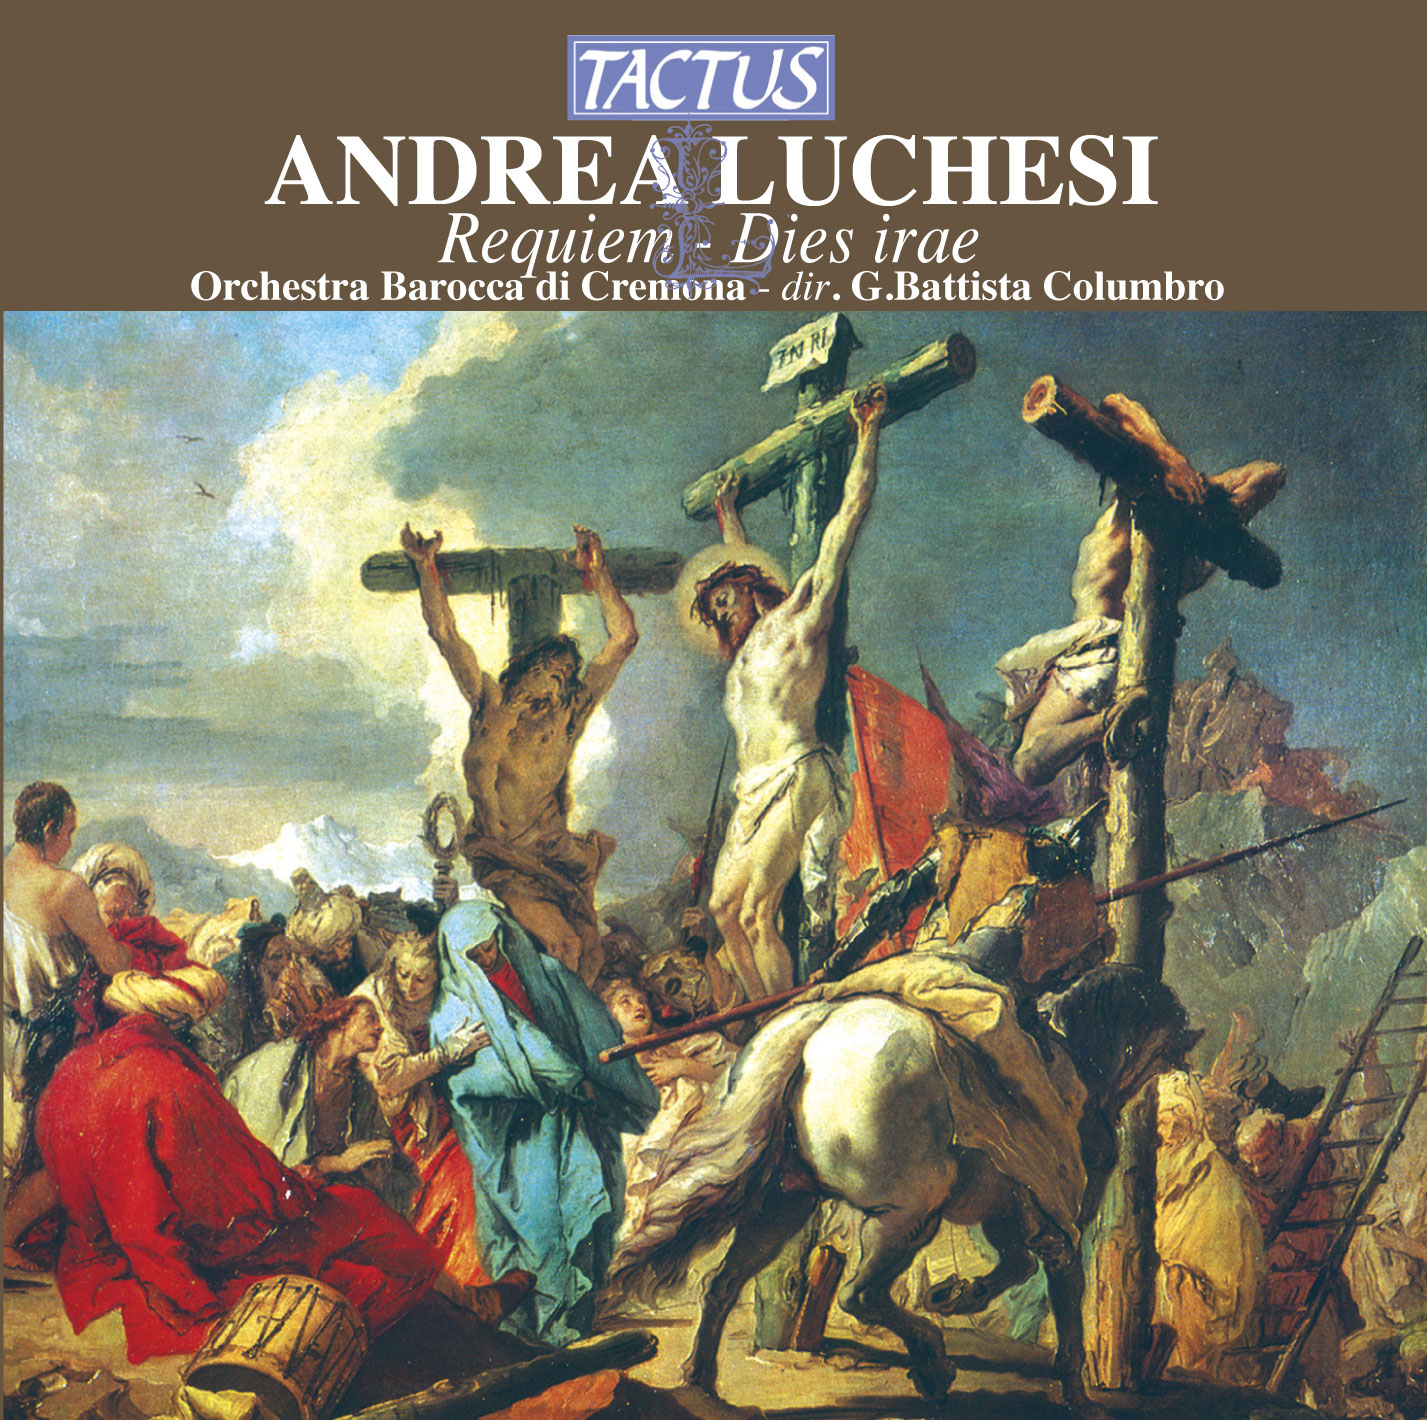 Andrea Luchesi - Requiem, Dies irae